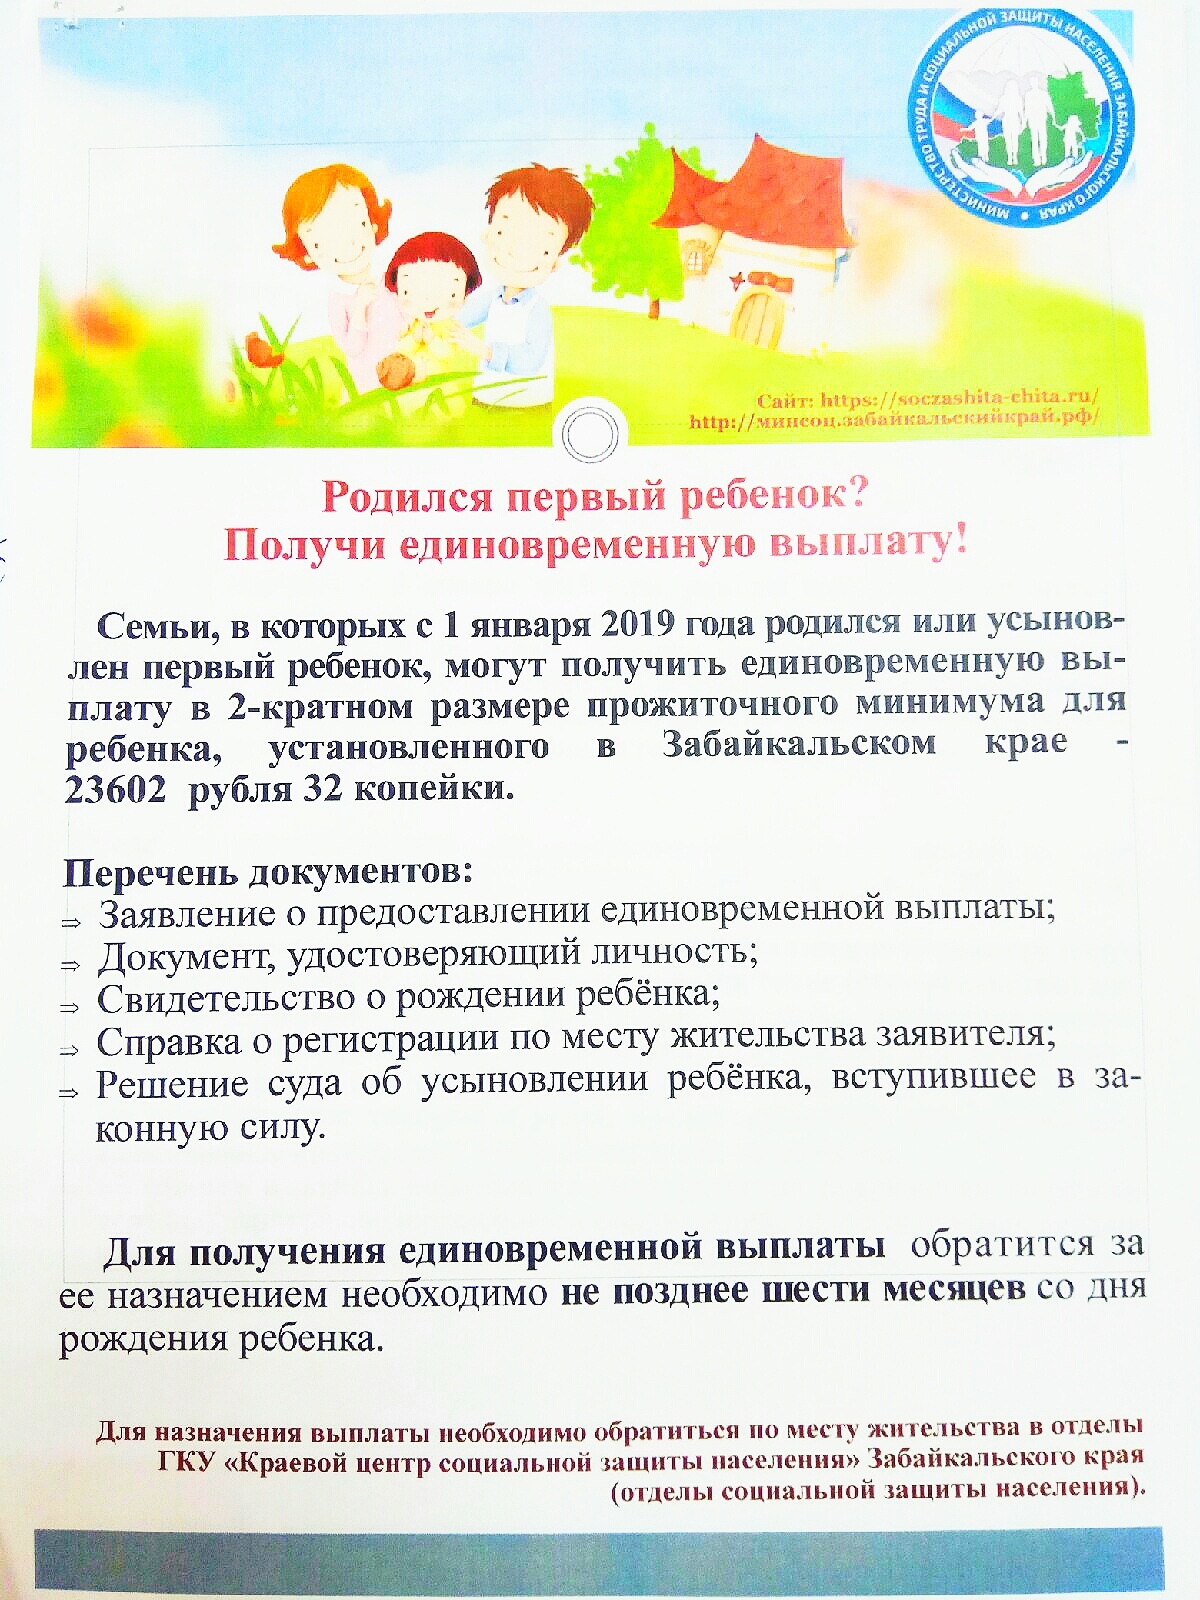 Краевой Минздрав публикует памятки по социальным выплатам для родителей первого и последующих детей